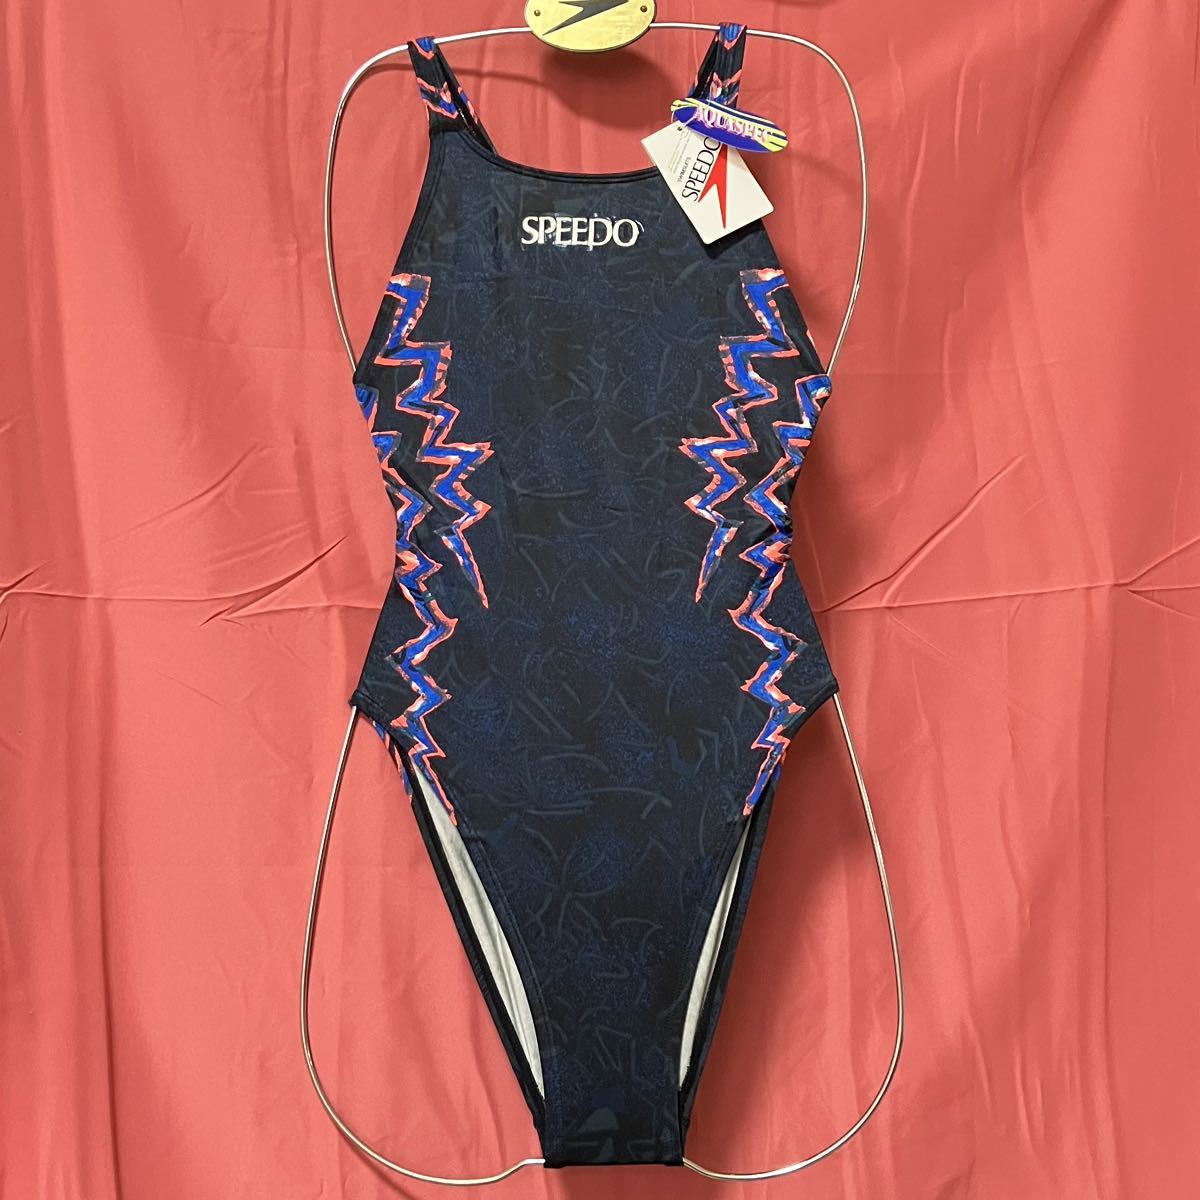 MIZUNO SPEEDO 競泳水着 ミズノ スピード ハイレグ ハイカット 83OE-60809 グラビア水着 ビンテージ 当時物 廃盤 Lサイズ  レトロ